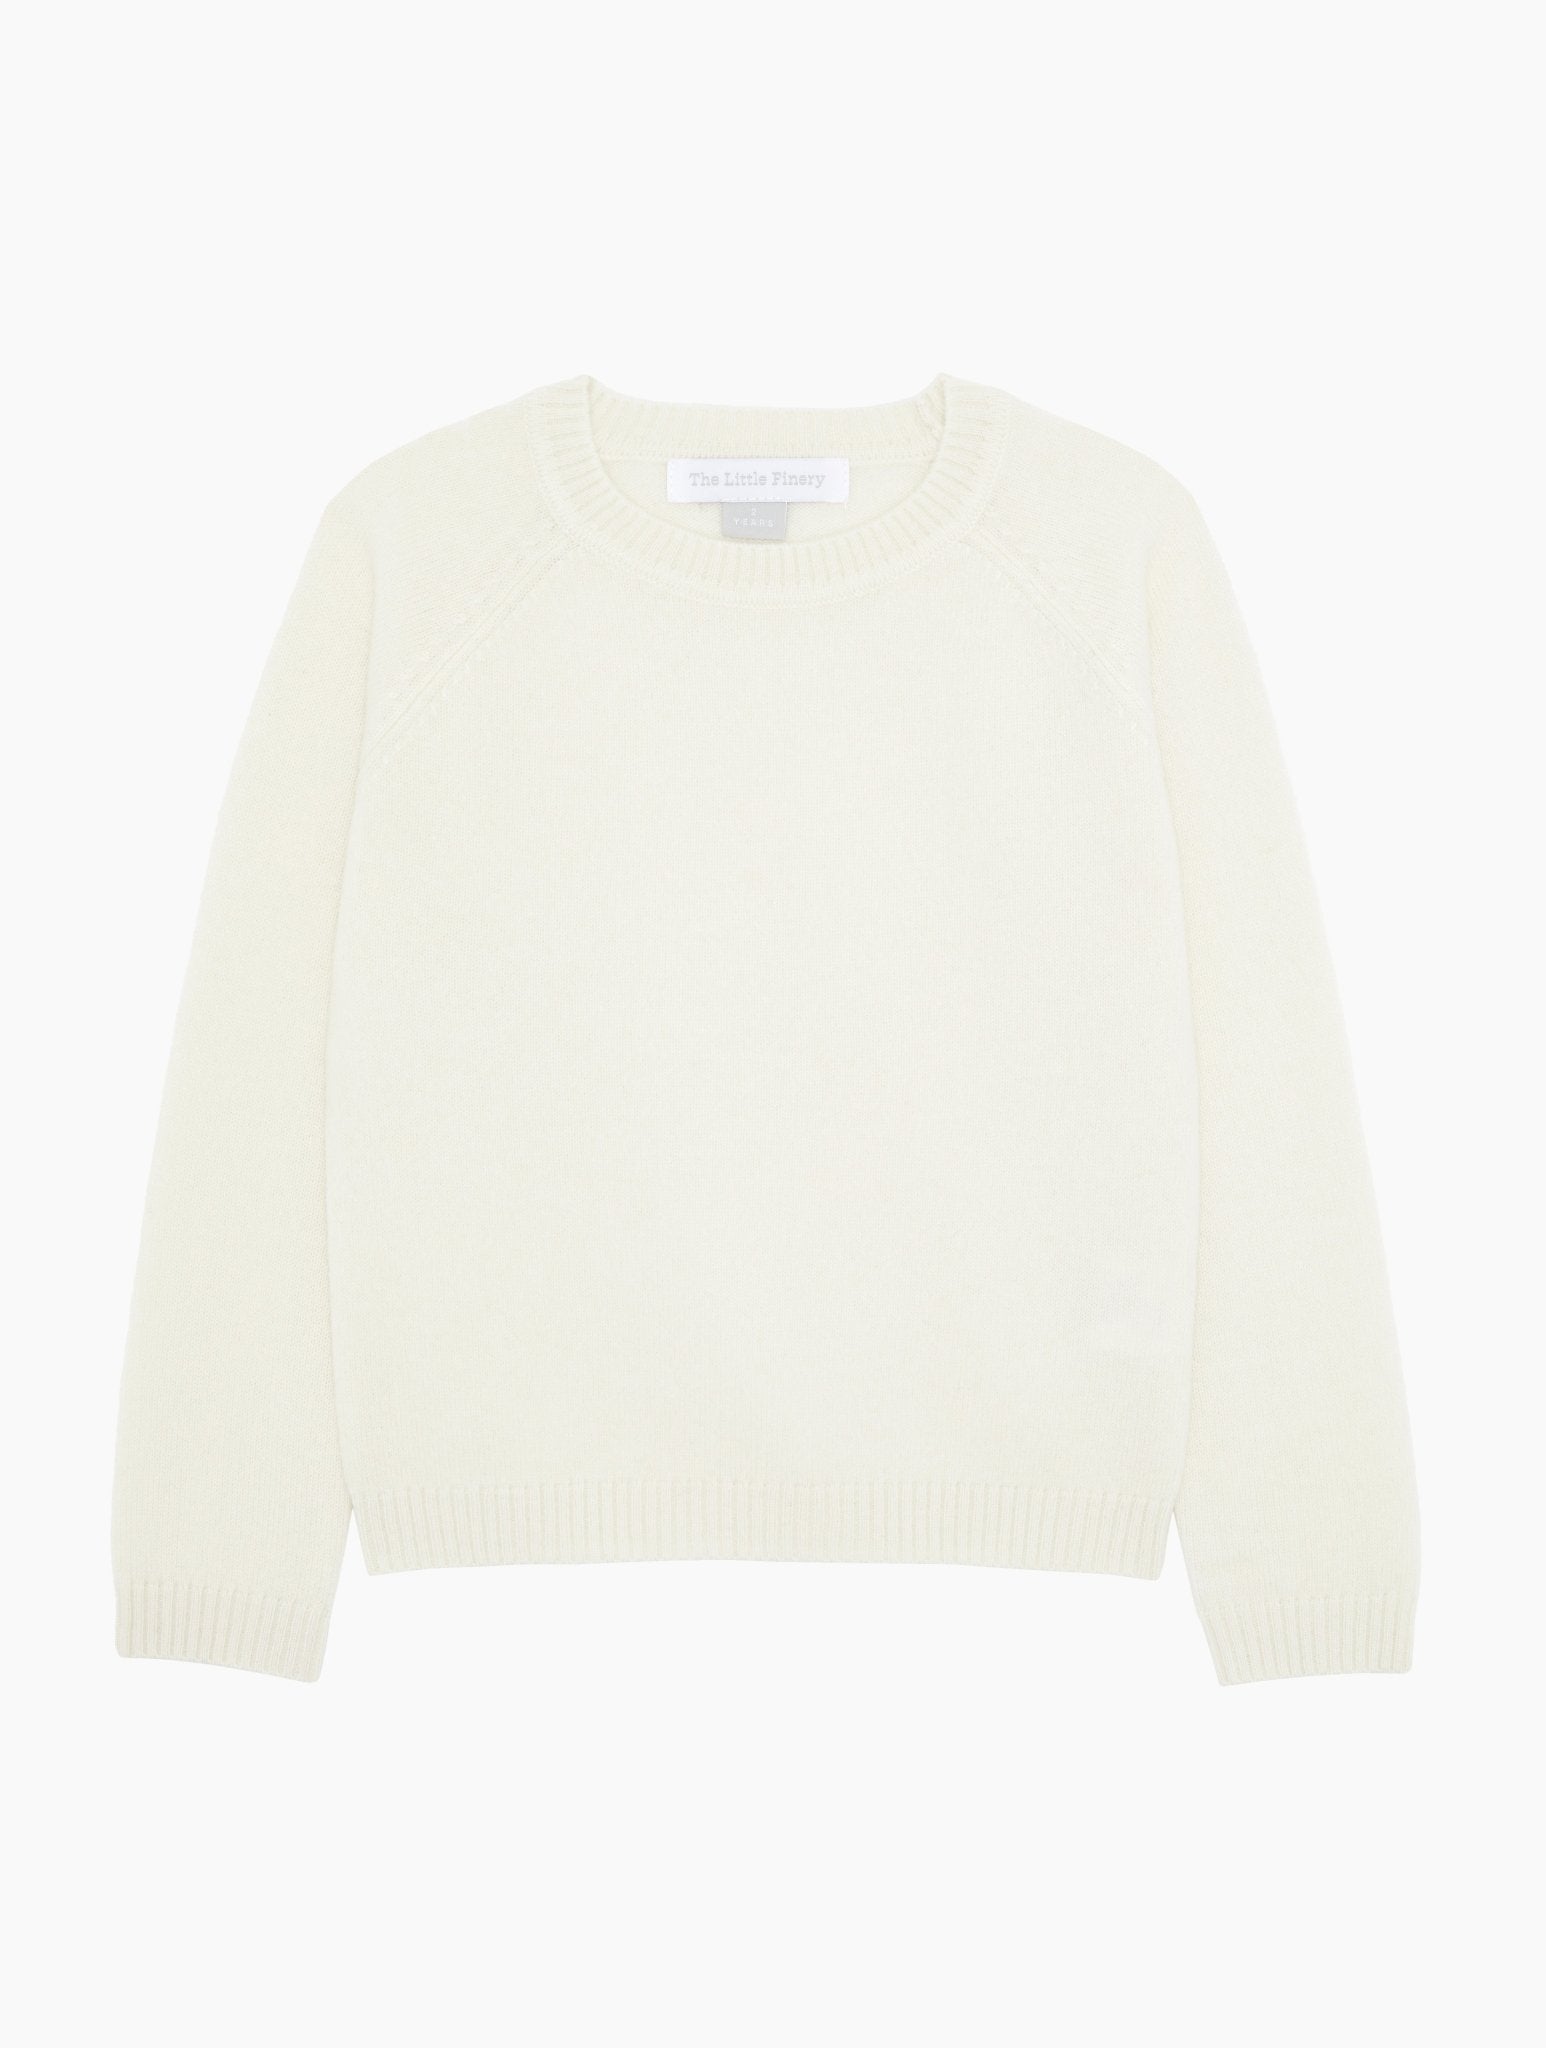 Cashmere Sweater in Ecru White